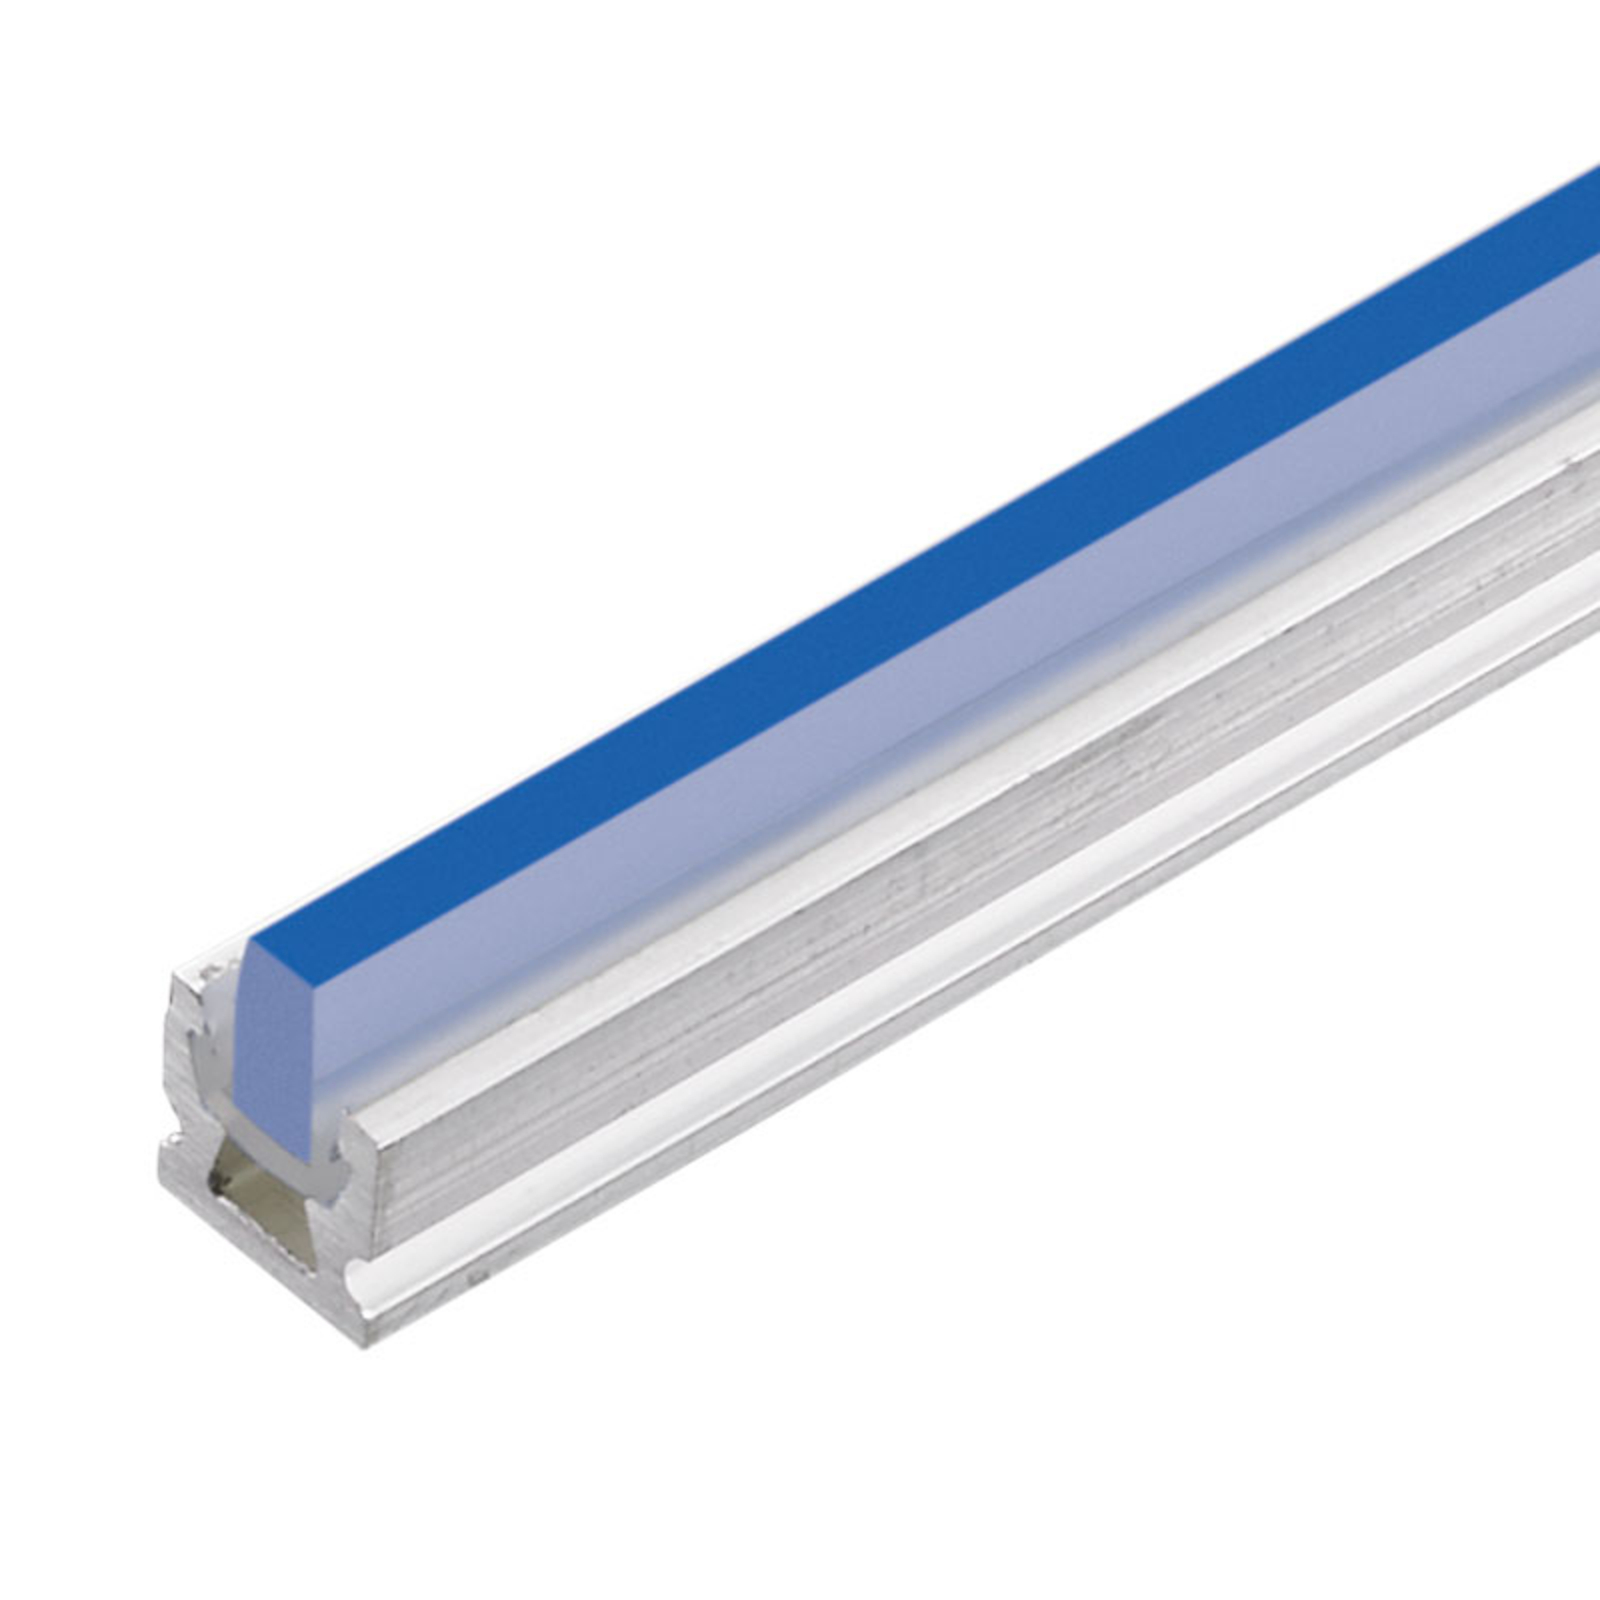 dot-spot LED linha de luz set sl 3.5, azul, 30 cm